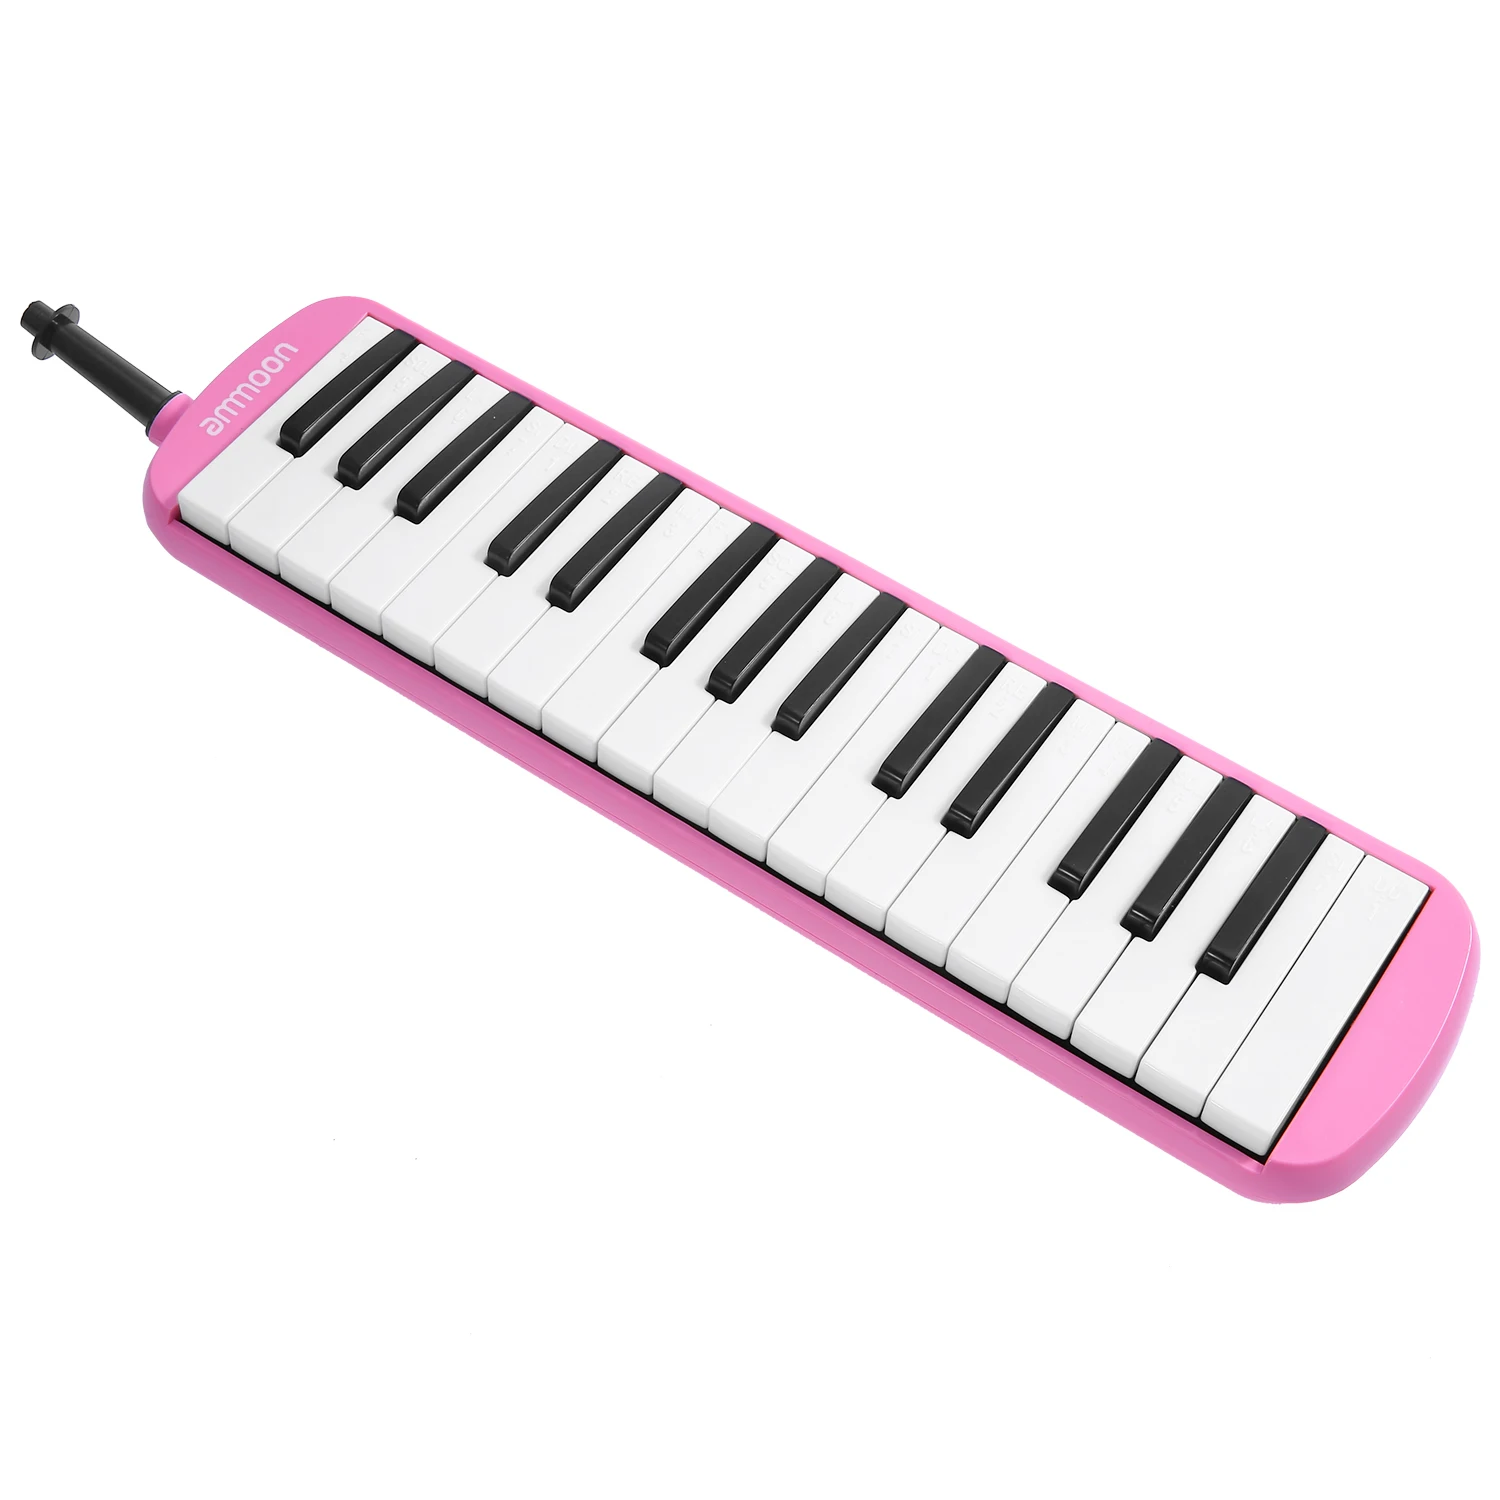 Ammoon 32 клавишная мелодика Фортепиано стиль клавишная гармоника рот орган с мундштук чистящая ткань чехол для переноски музыкальный подарок